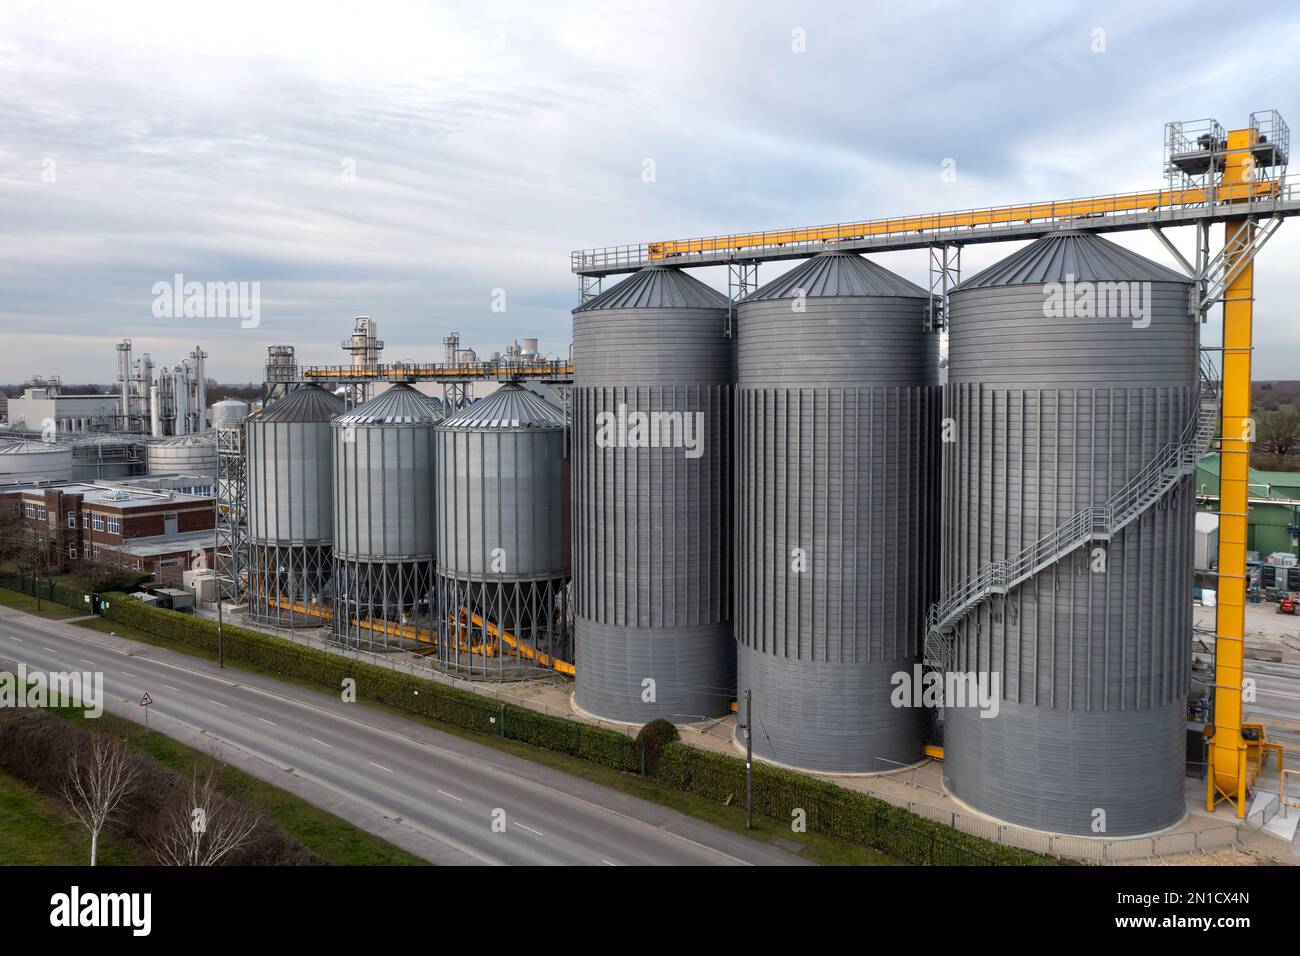 Una fila di serbatoi di stoccaggio industriali o silos su larga scala in un impianto chimico con spazio di copia sopra Foto Stock